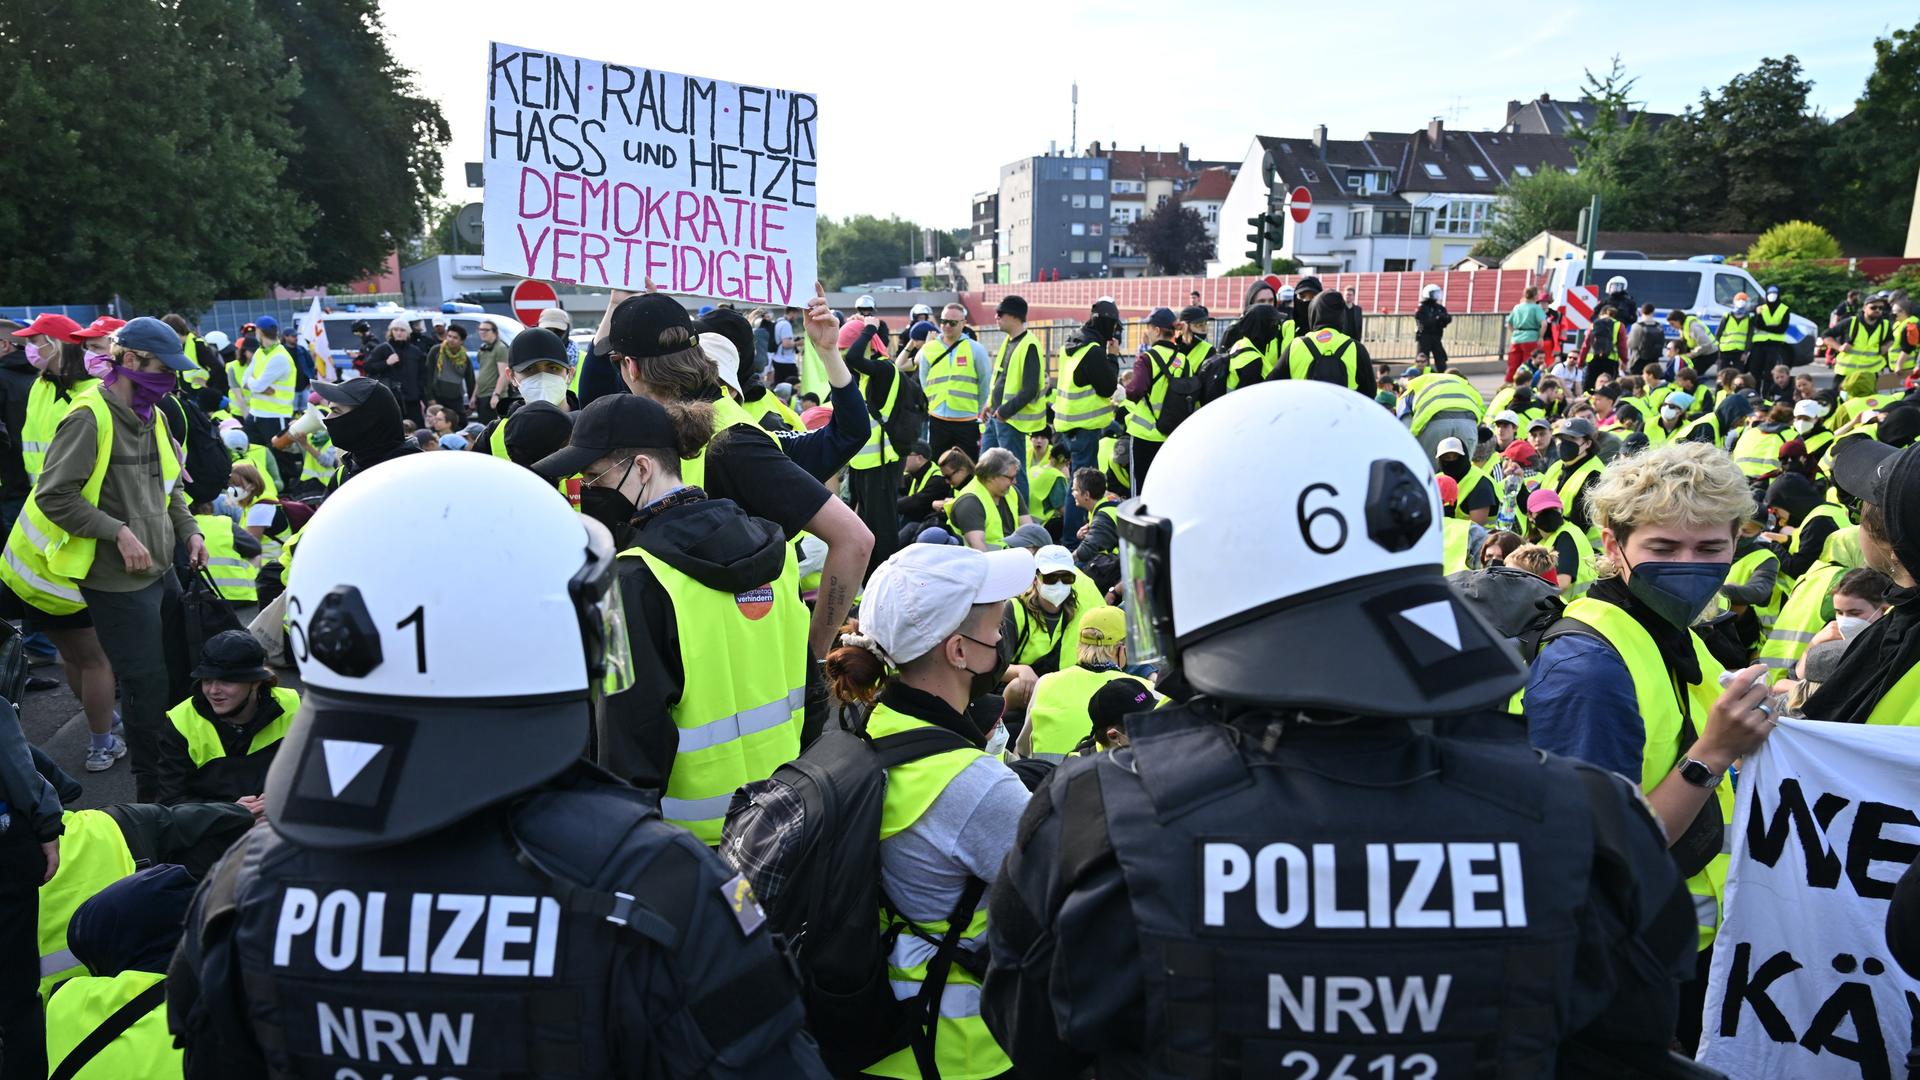 Demonstranten stehen und sitzen auf einer Zufahrtsstraße zum Gelände des AfD-Parteitags in Essen - einige halten ein Schild mit der Aufschrift "Kein Raum für Hass und Hetze - Demokratie verteidigen". Im Bildvordergrund stehen zwei Polizisten.